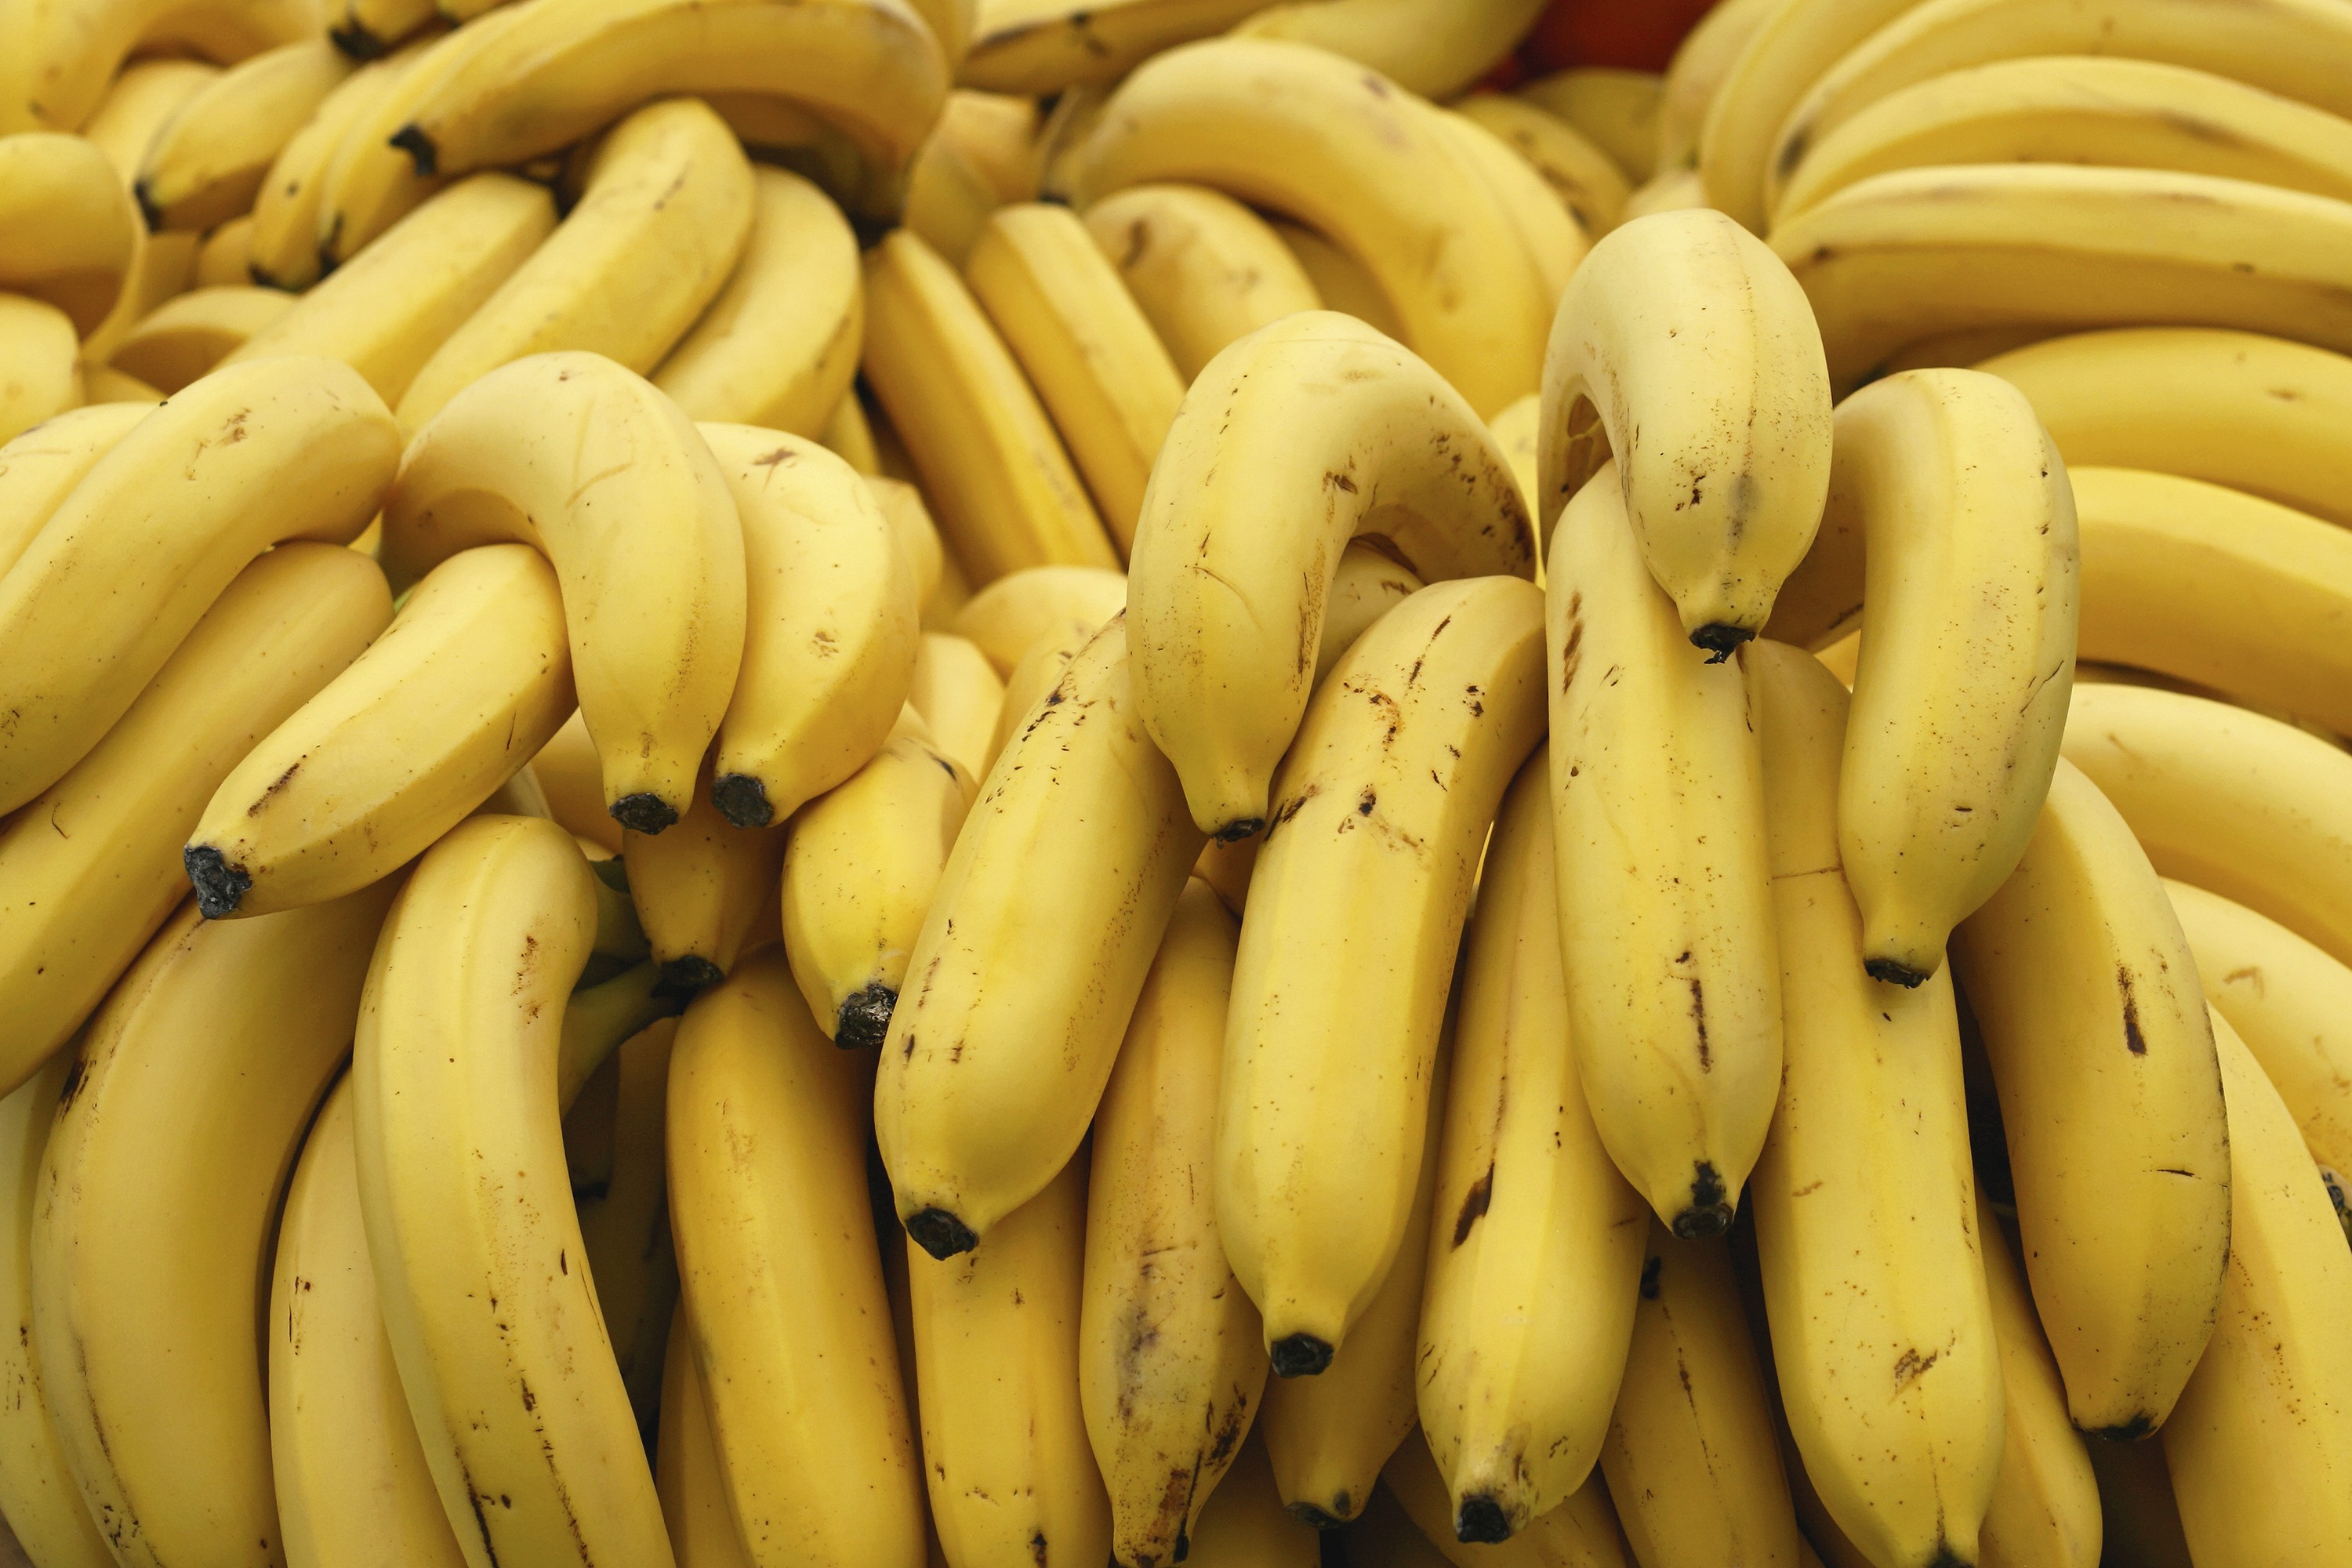 Oito benefícios da banana: fruta ajuda a dormir melhor e é boa para a pele  - Revista Globo Rural | Hortifruti